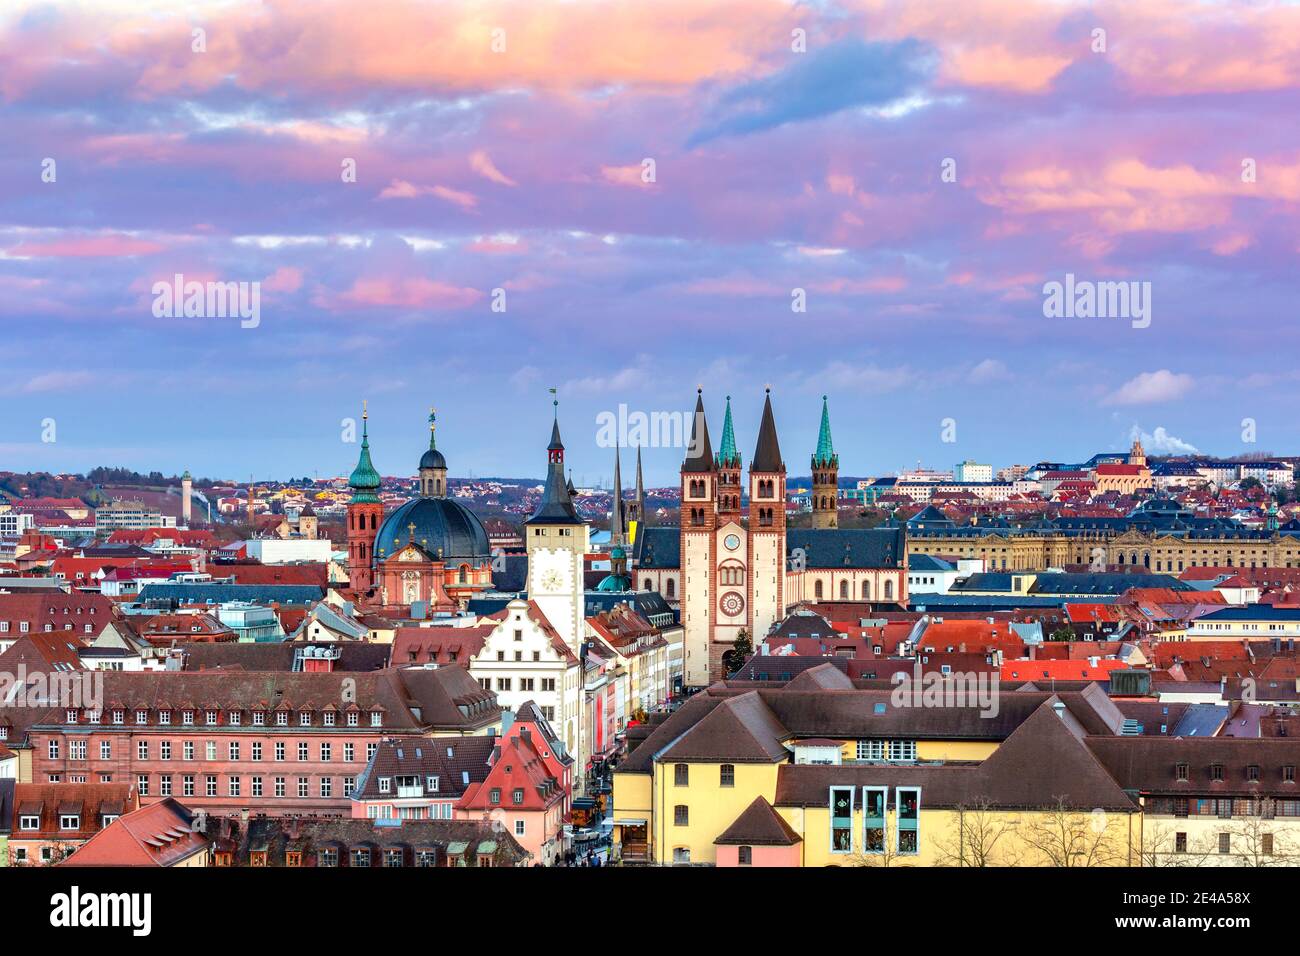 Luftpanorama der Altstadt mit Dom und Rathaus in Würzburg bei Sonnenuntergang, Franken, Bayern, Deutschland Stockfoto